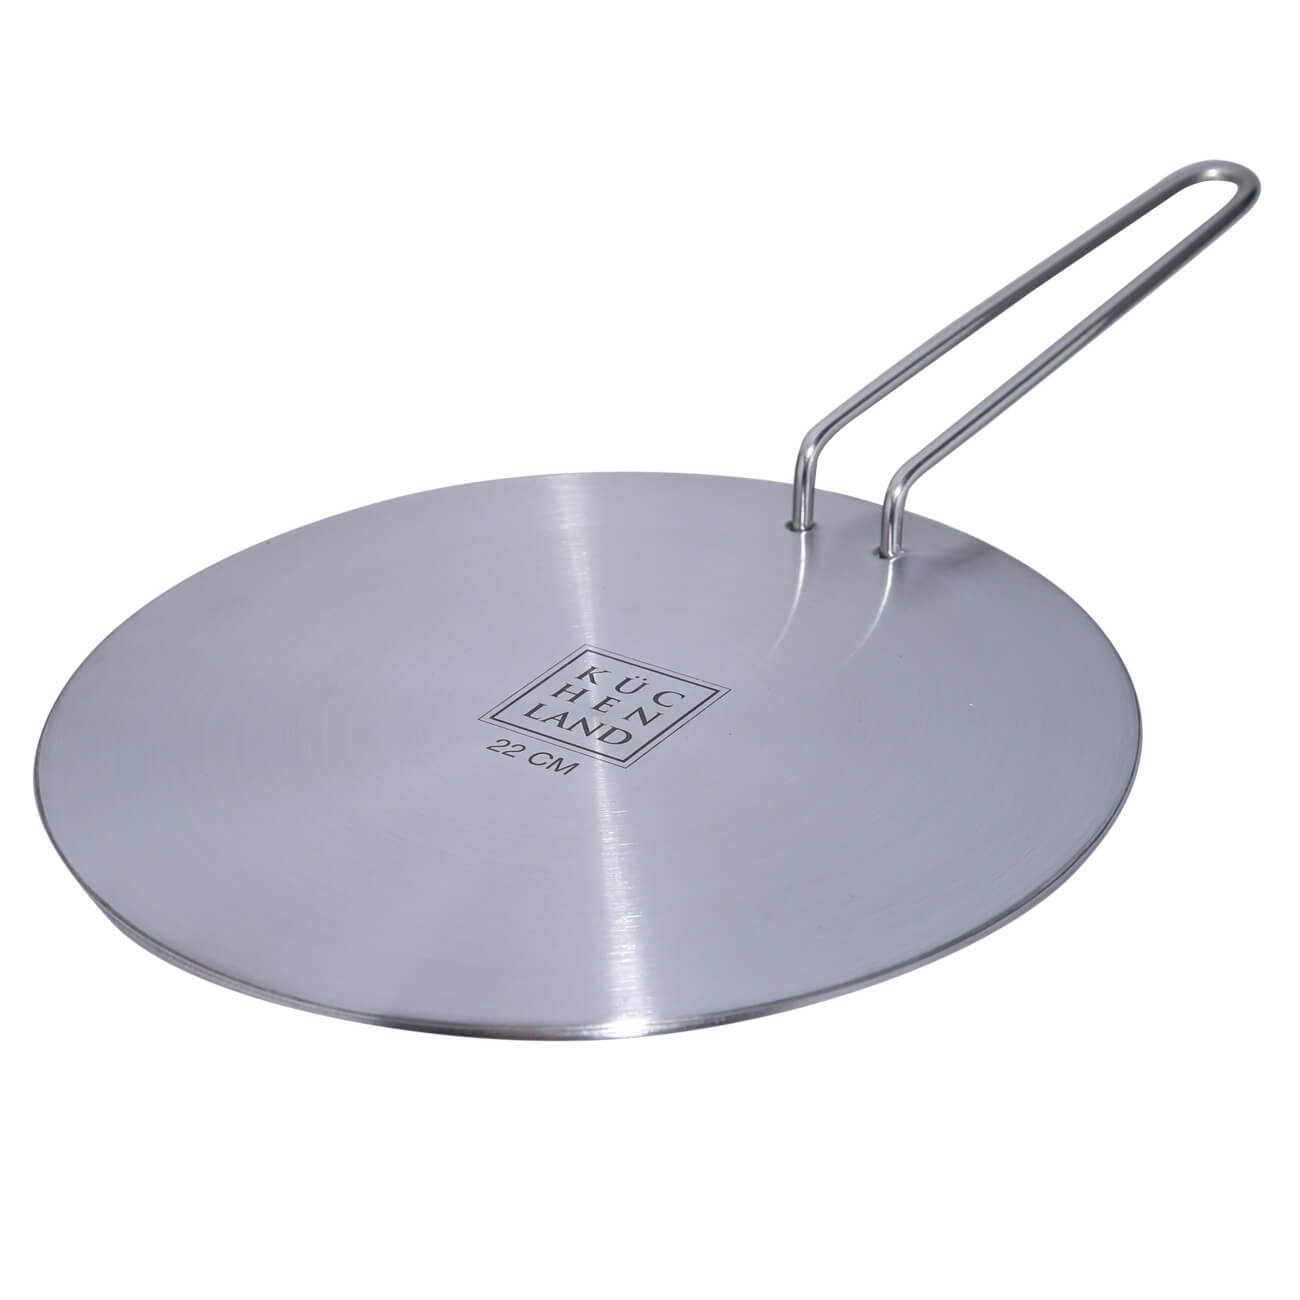 Диск-переходник для индукционной плиты, 22 см, со съемной ручкой, сталь/алюминий, Induction